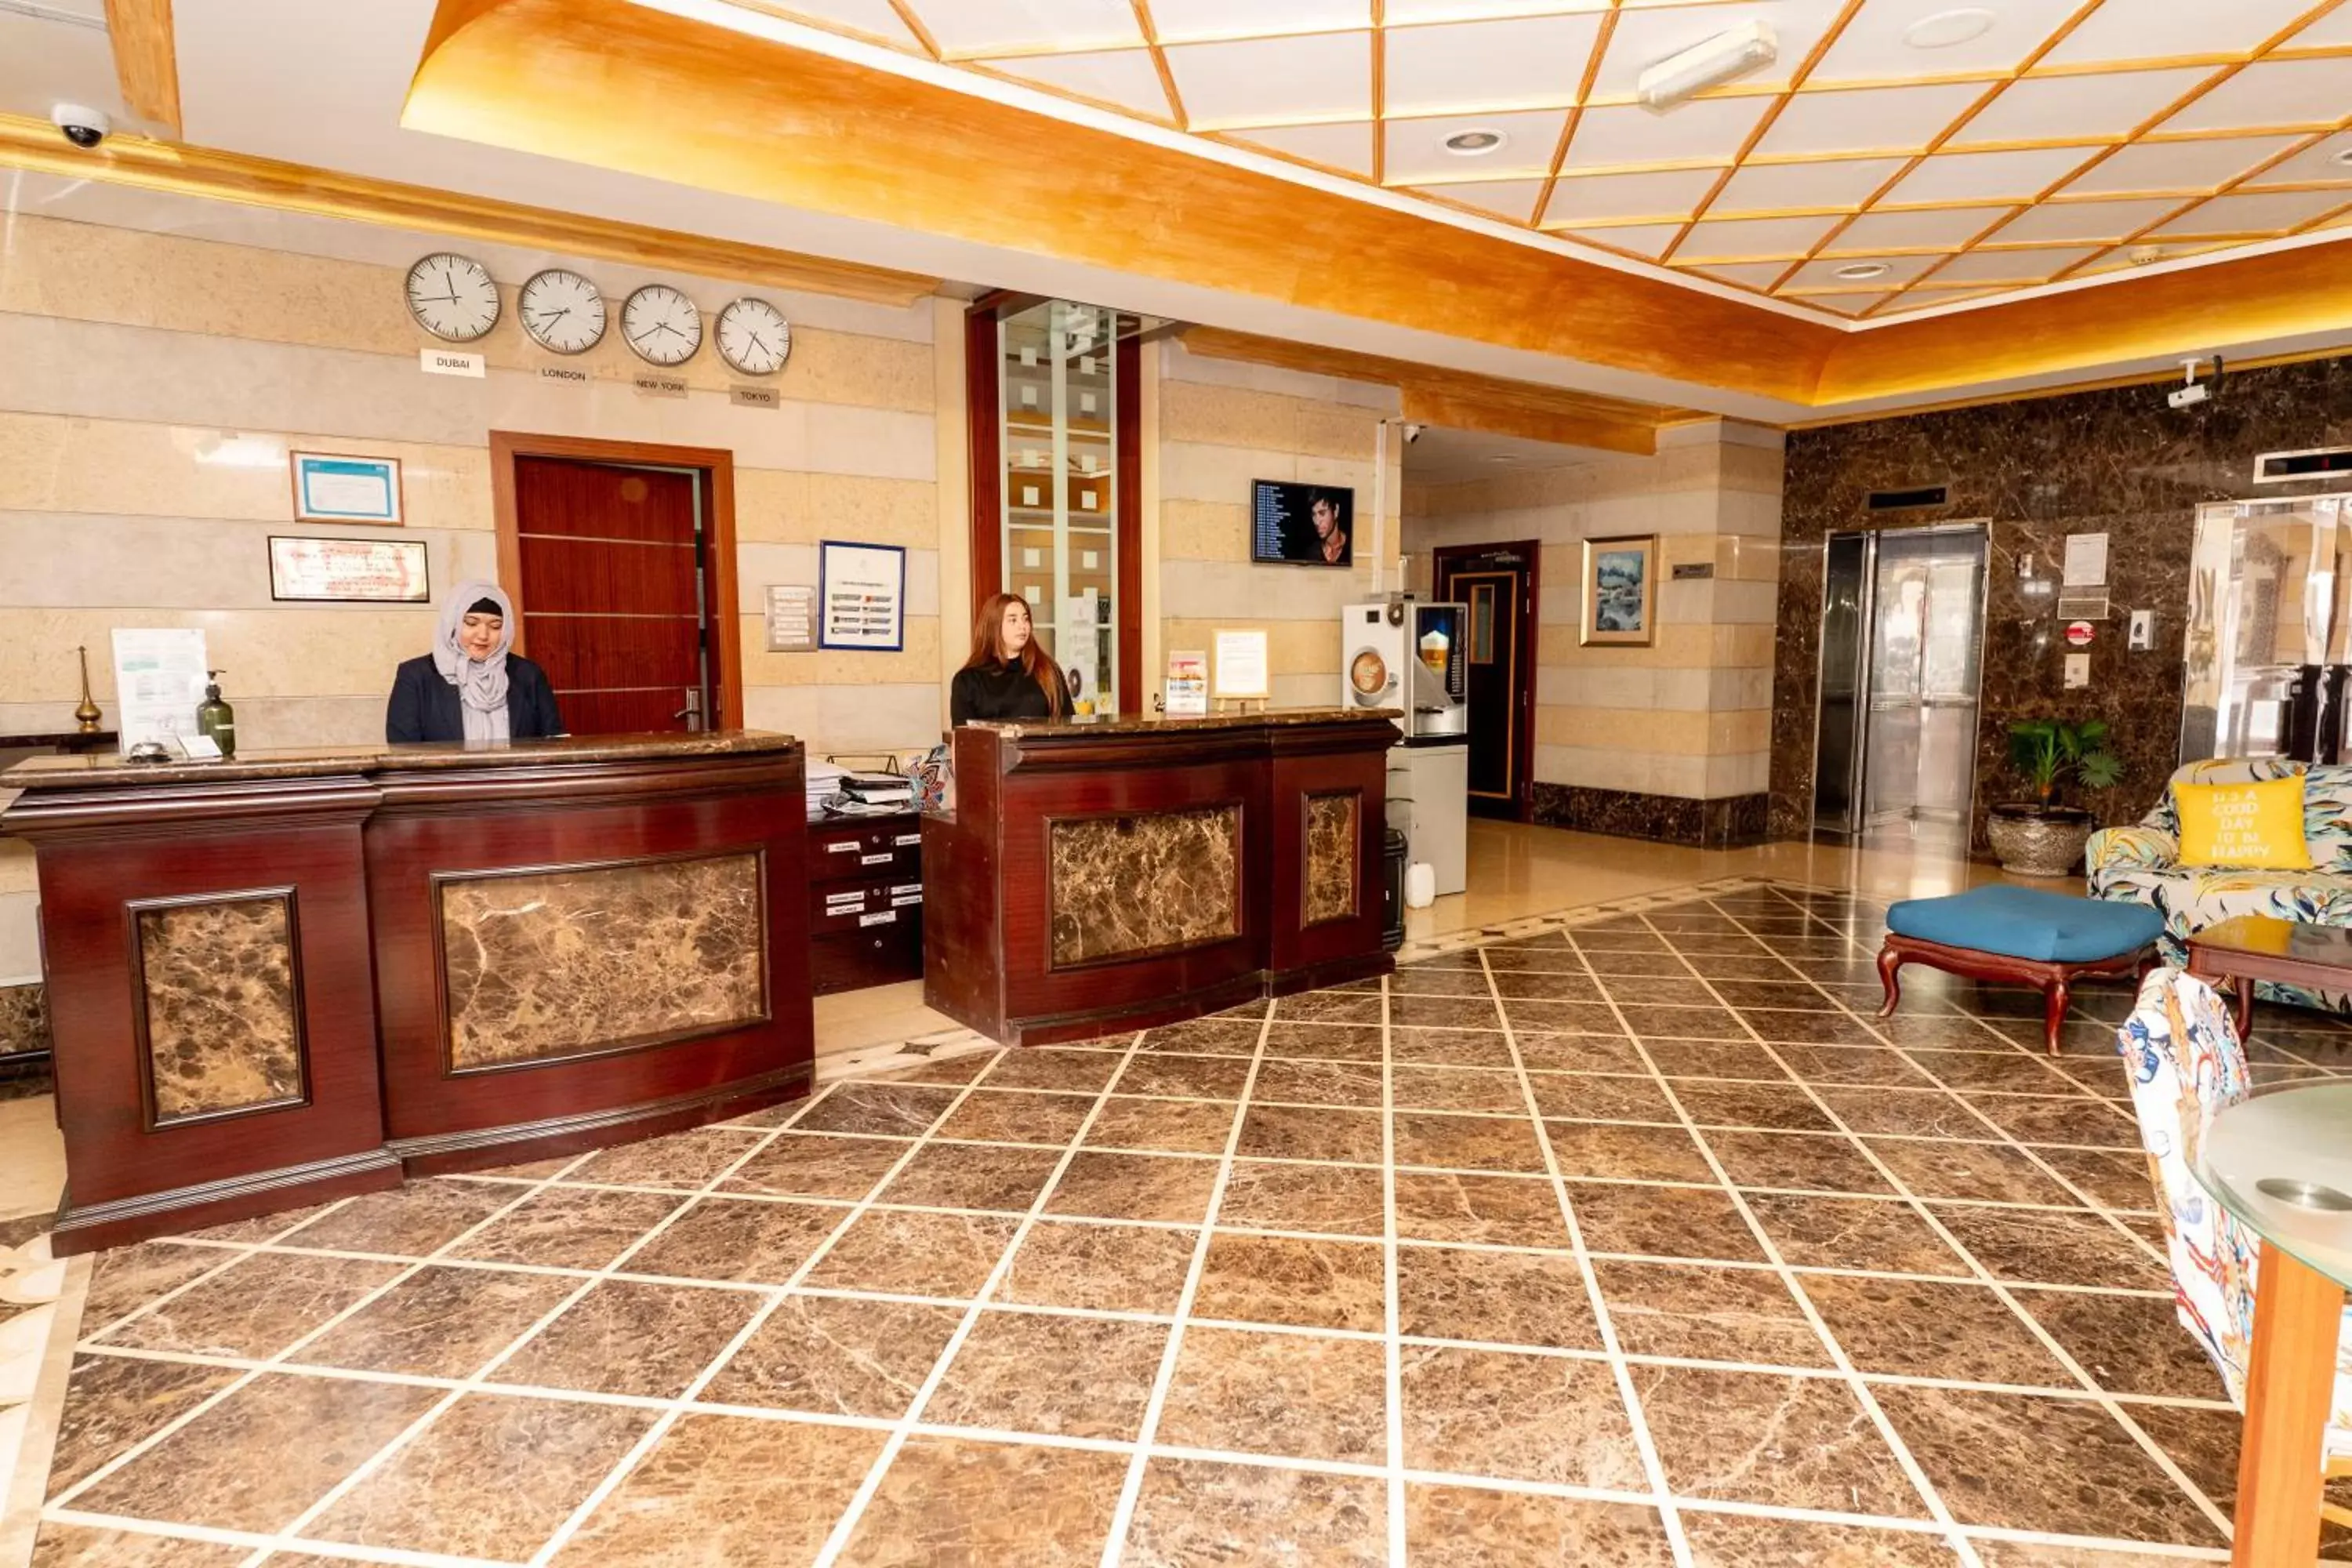 Lobby or reception, Lobby/Reception in Al Raya Hotel Apartments